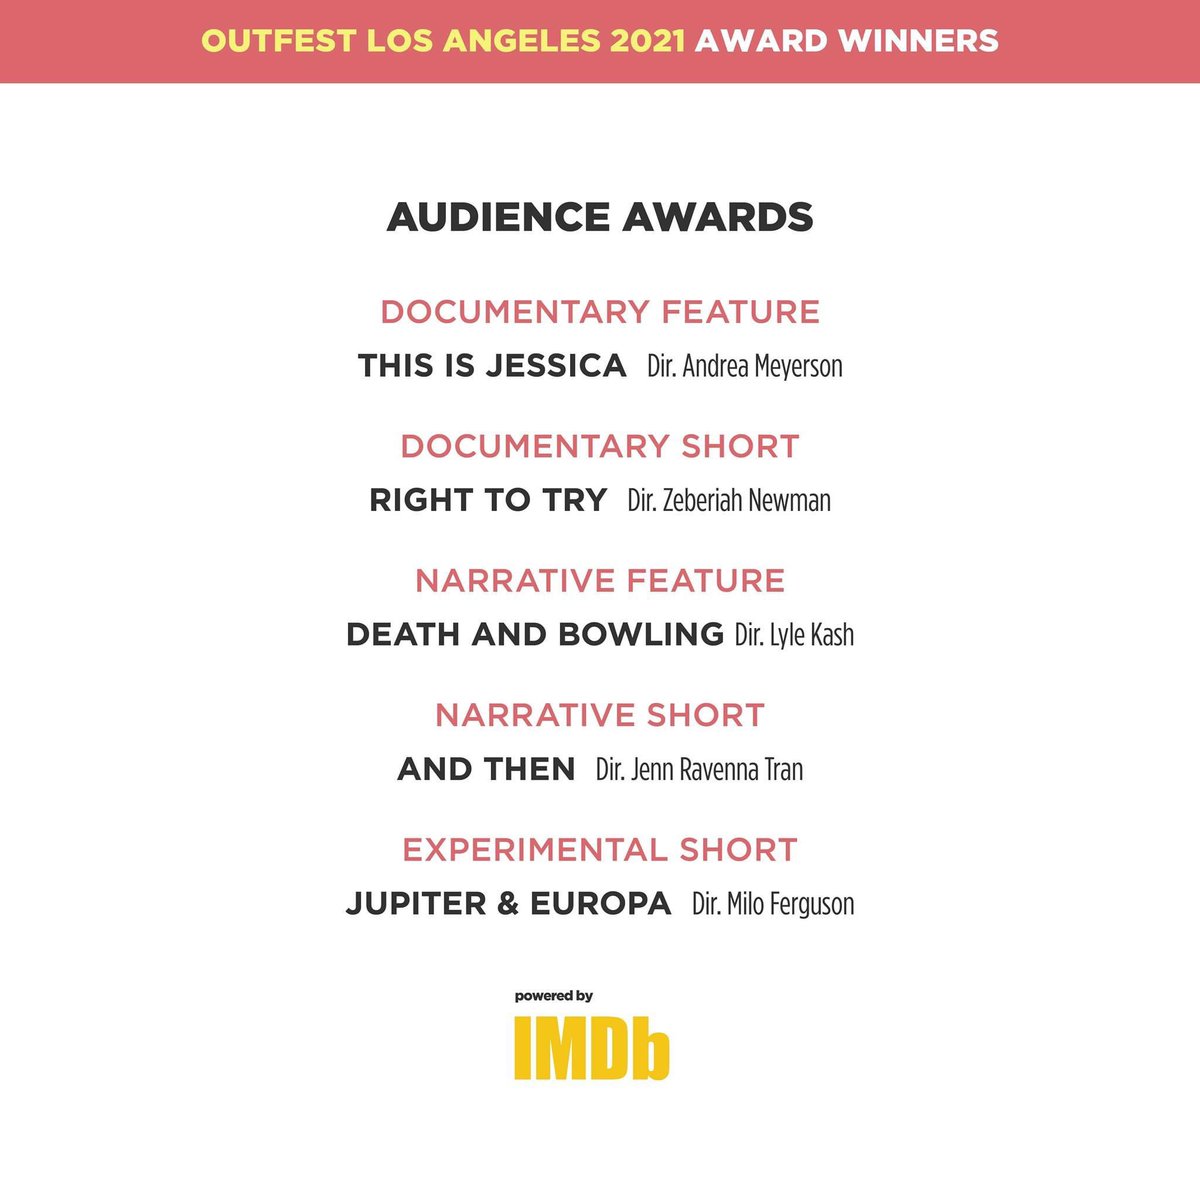 Türk oyuncu olarak Kadrosunda olmaktan çok mutlu olduğum 2018 Los Angeles/Hollywood yapımı @deathandbowling ilk gösterildiği #OutfestLA2021 den seyirci ödülü aldı.